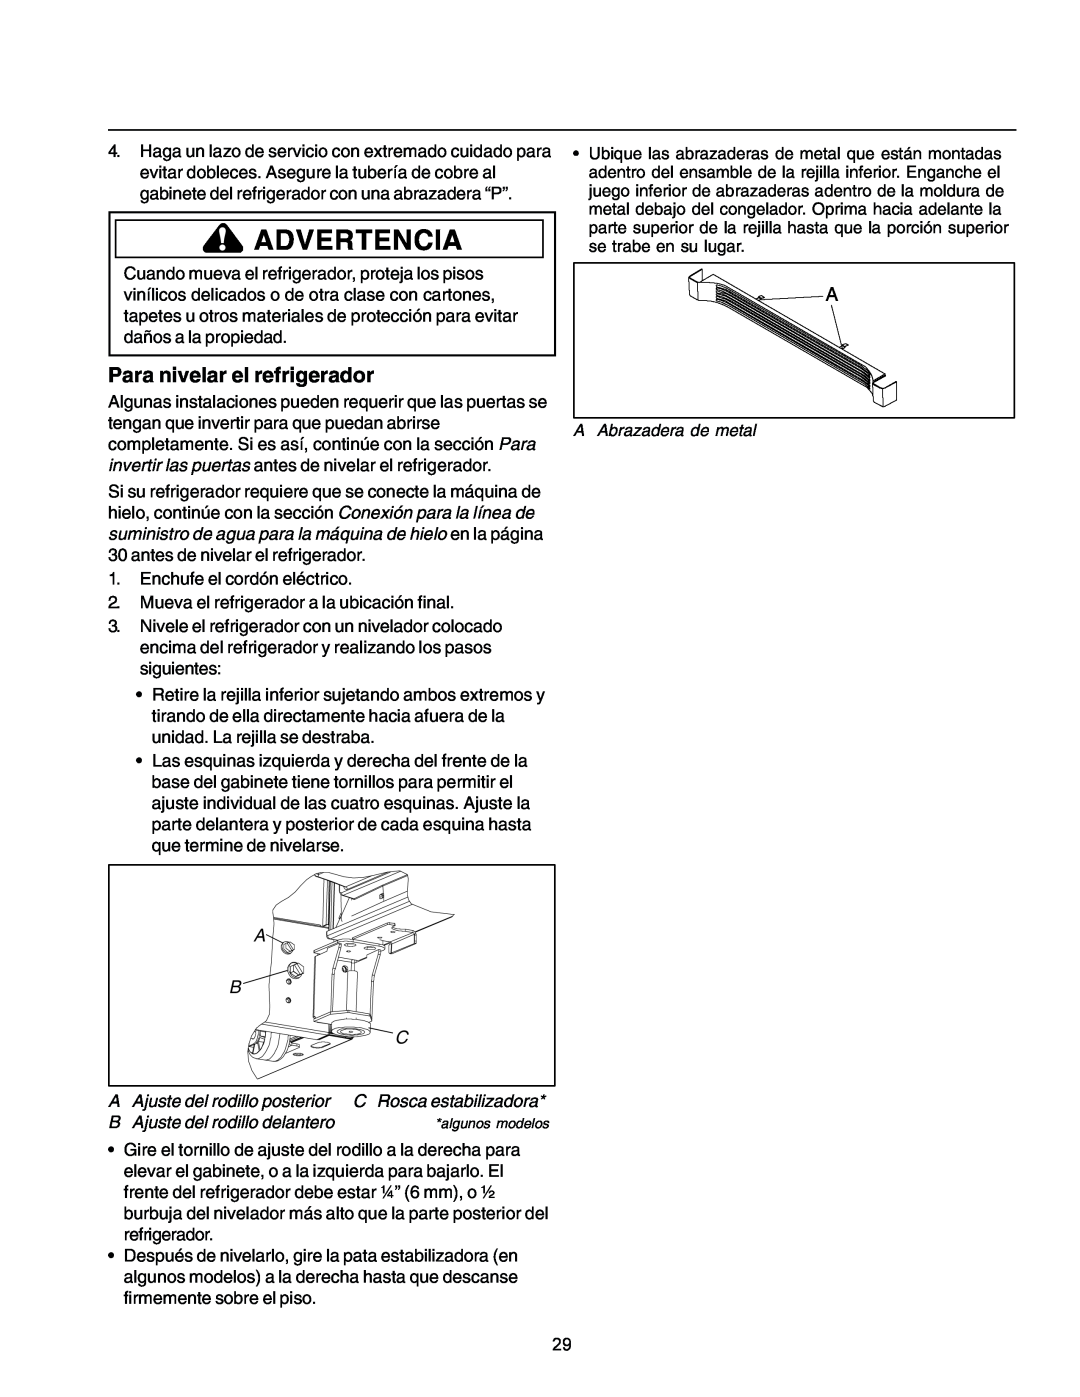 Amana IA 52204-0001 owner manual Para nivelar el refrigerador, Advertencia 